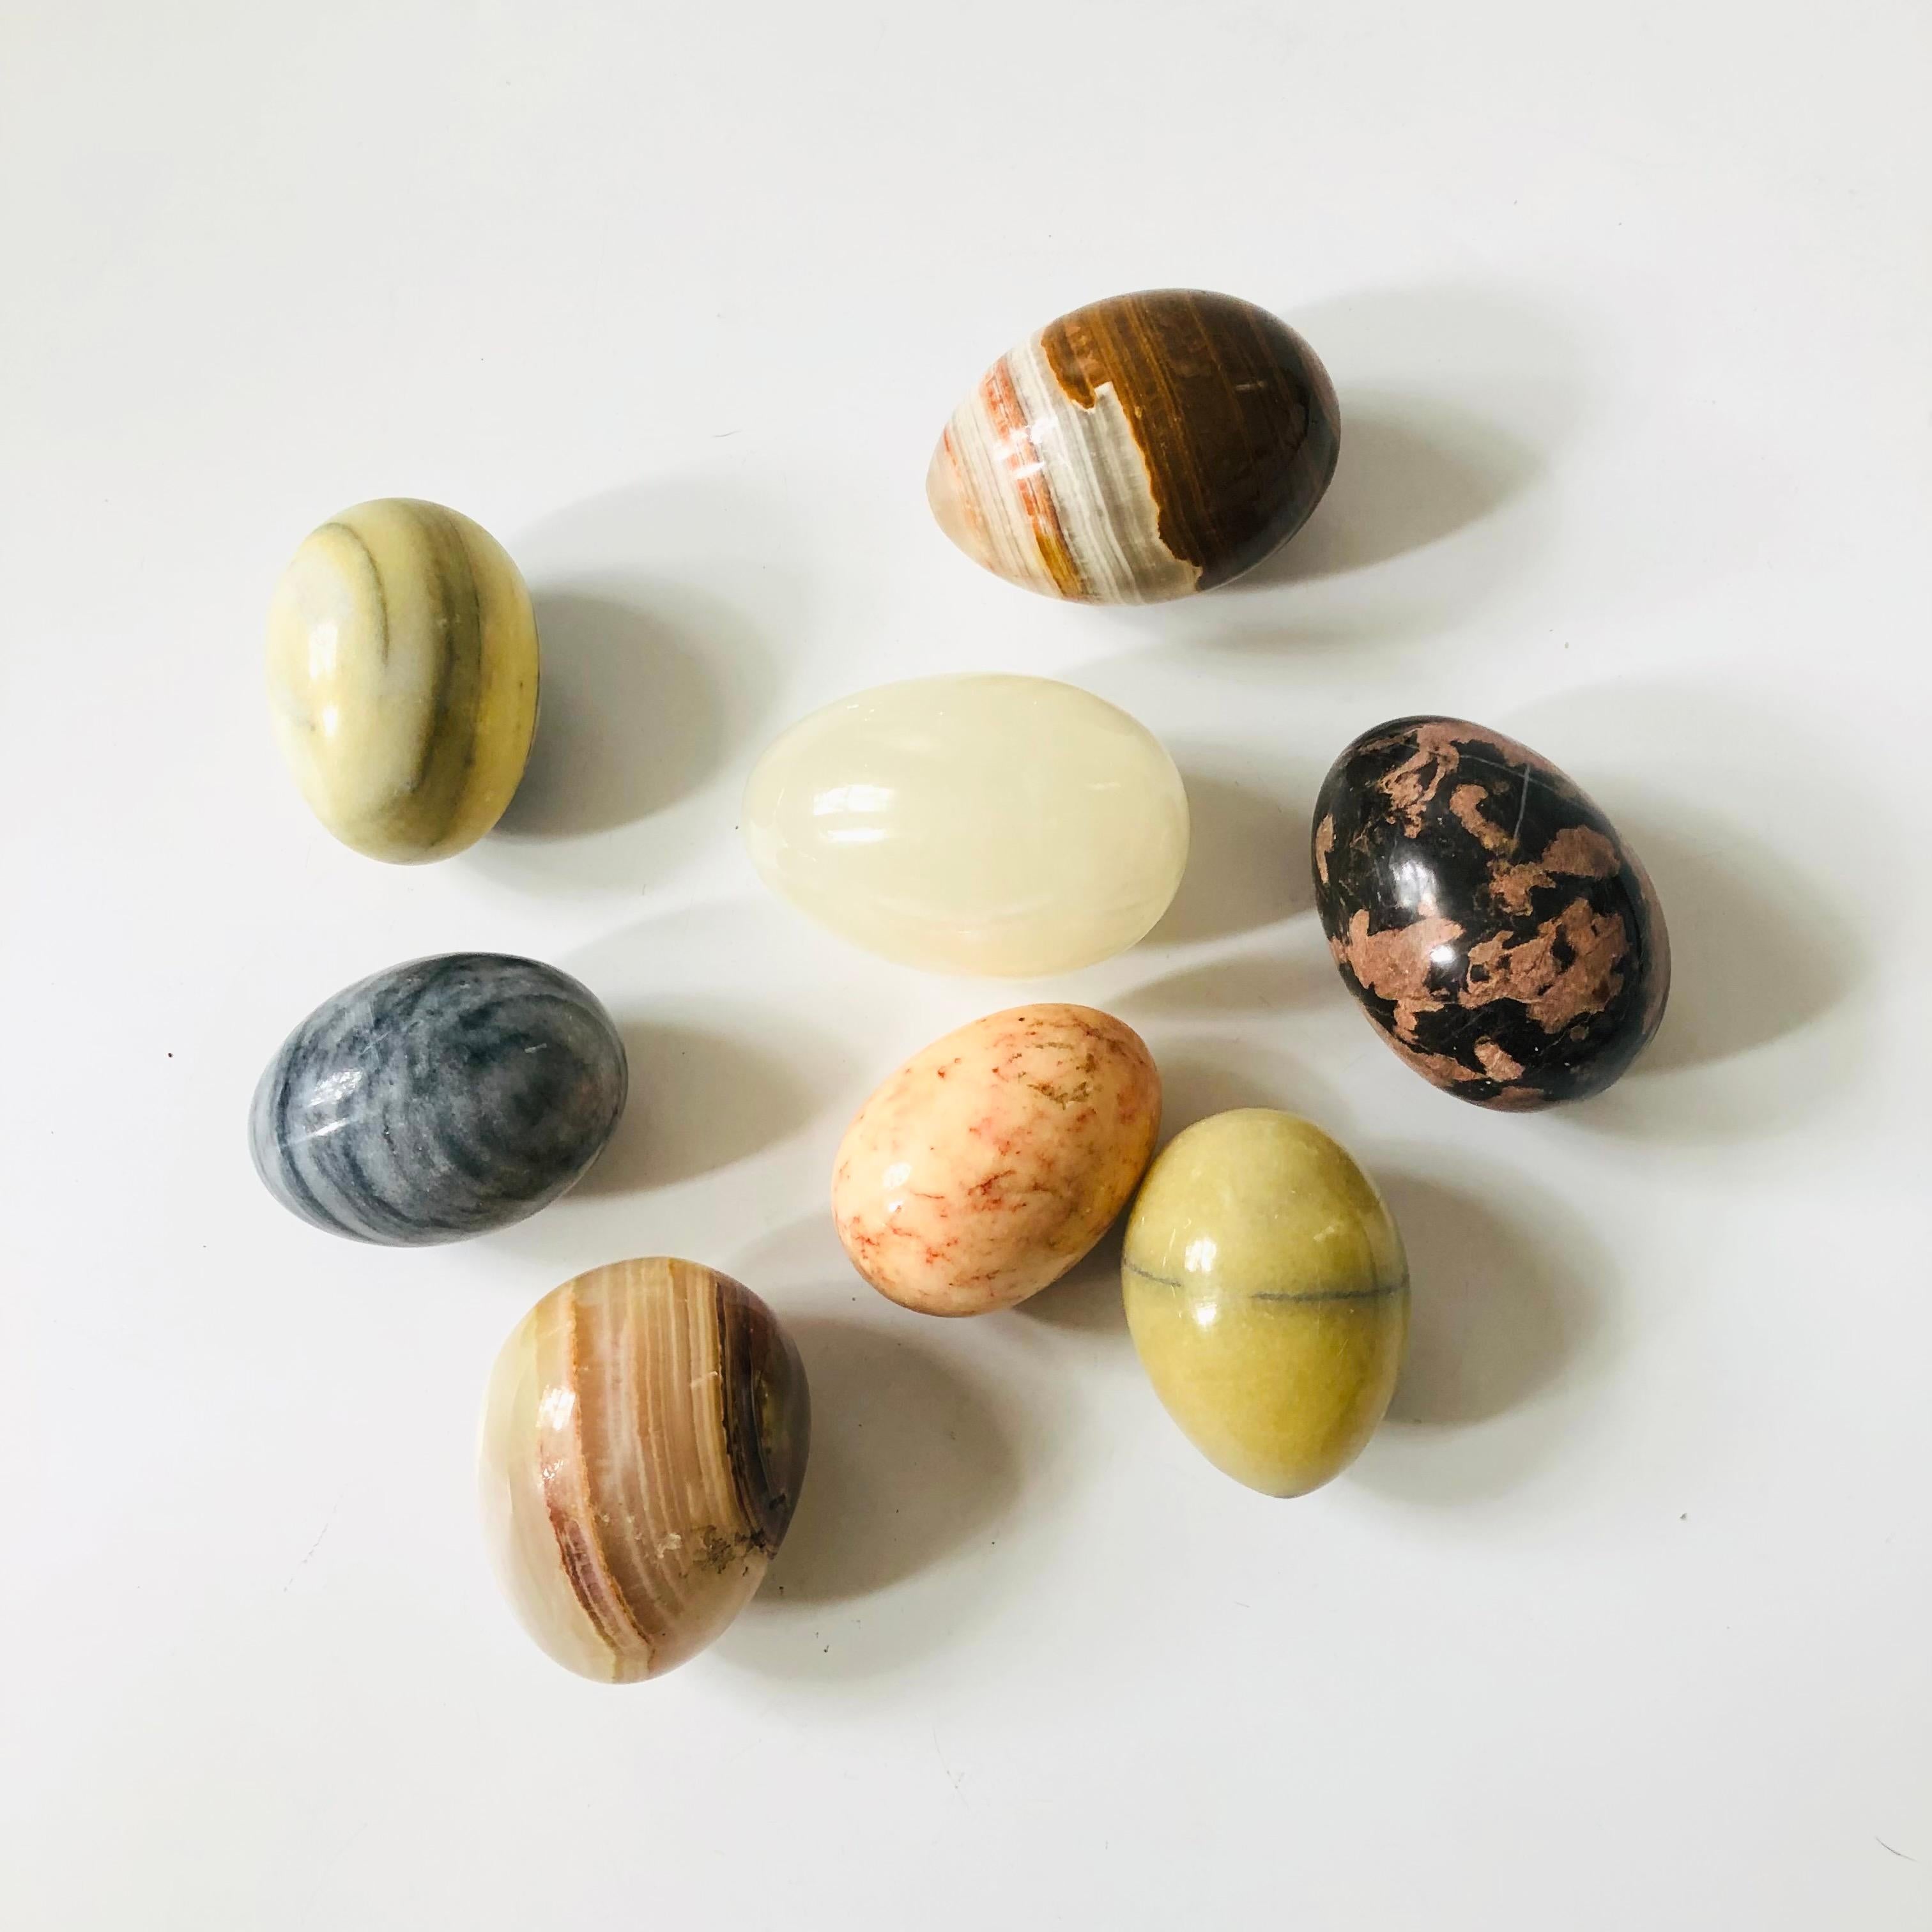 Un ensemble de 8 œufs décoratifs en albâtre. Belle variété de couleurs et veinage naturel de la pierre.
Chacune mesure environ 2,5